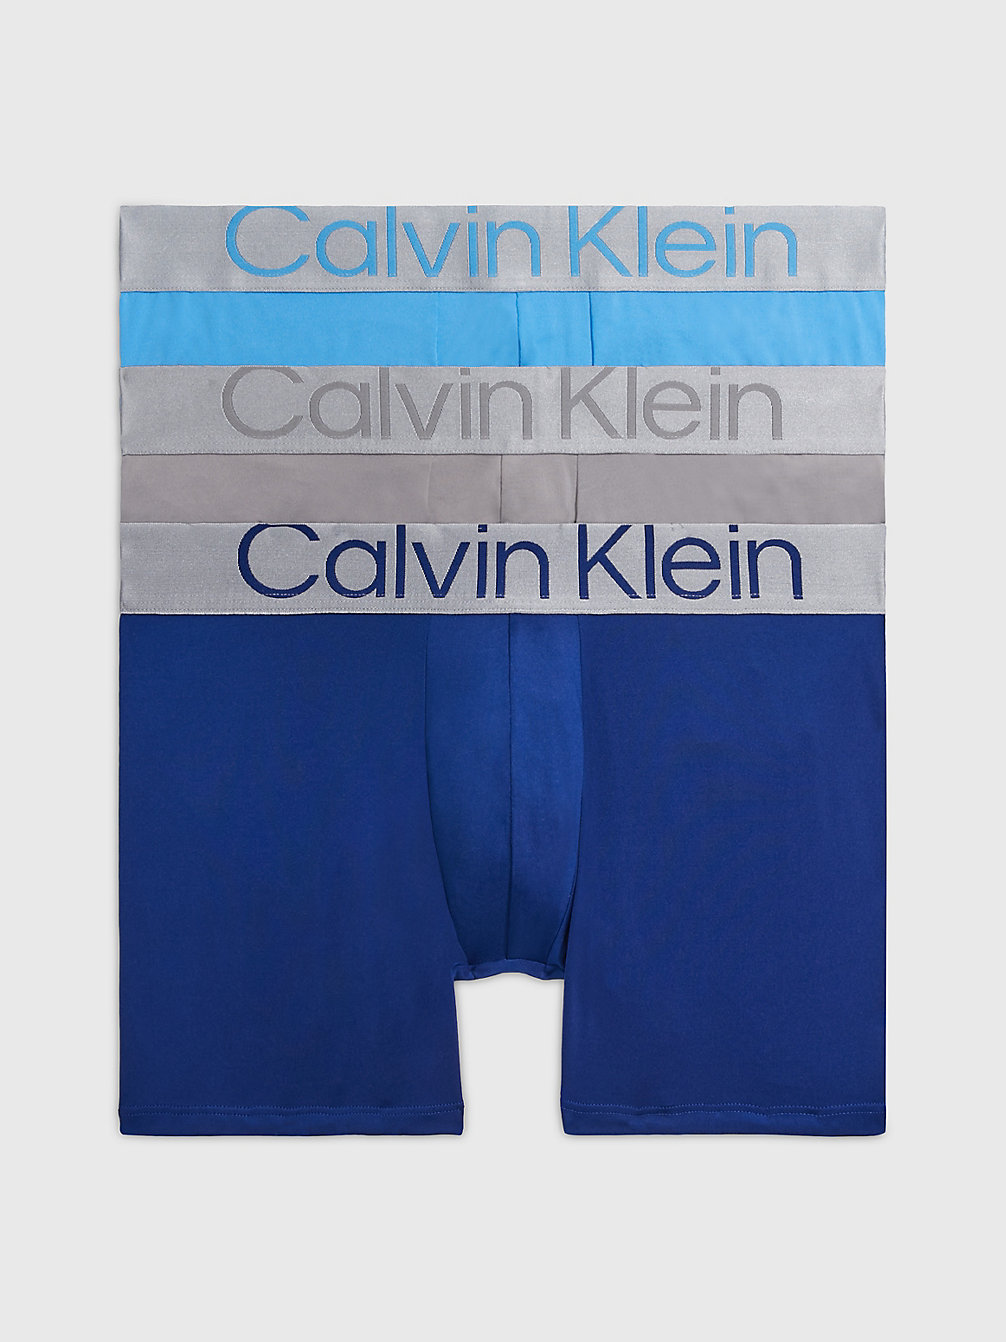 Boxer Aderenti Lunghi In Confezione Da 3 - Steel Micro > MID BLUE, SIGNATURE BLUE, CLAY GRY > undefined uomo > Calvin Klein